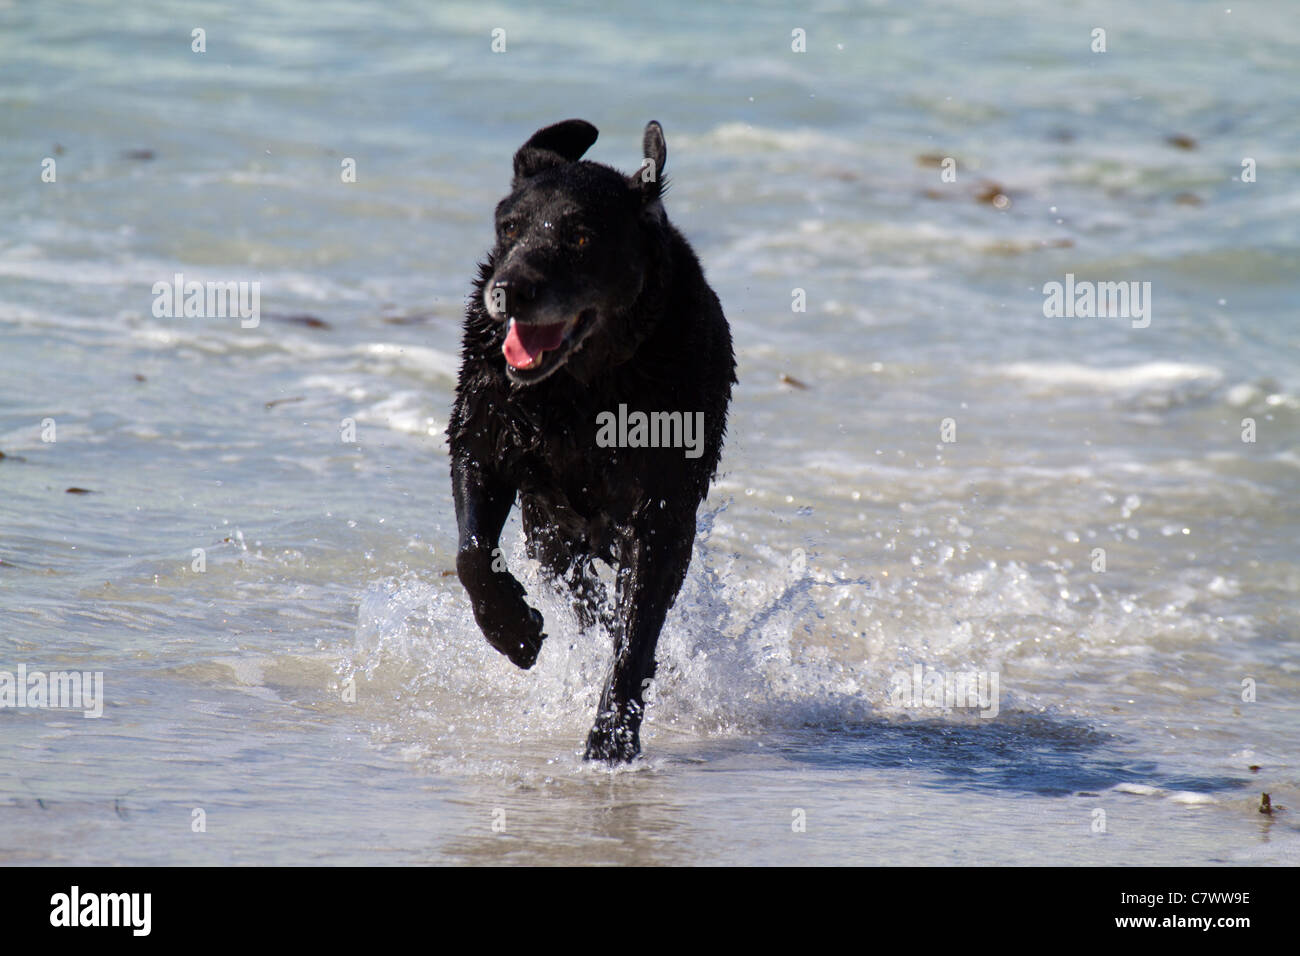 Blog Caracol de Agua: Solo es un perro negro en la calle